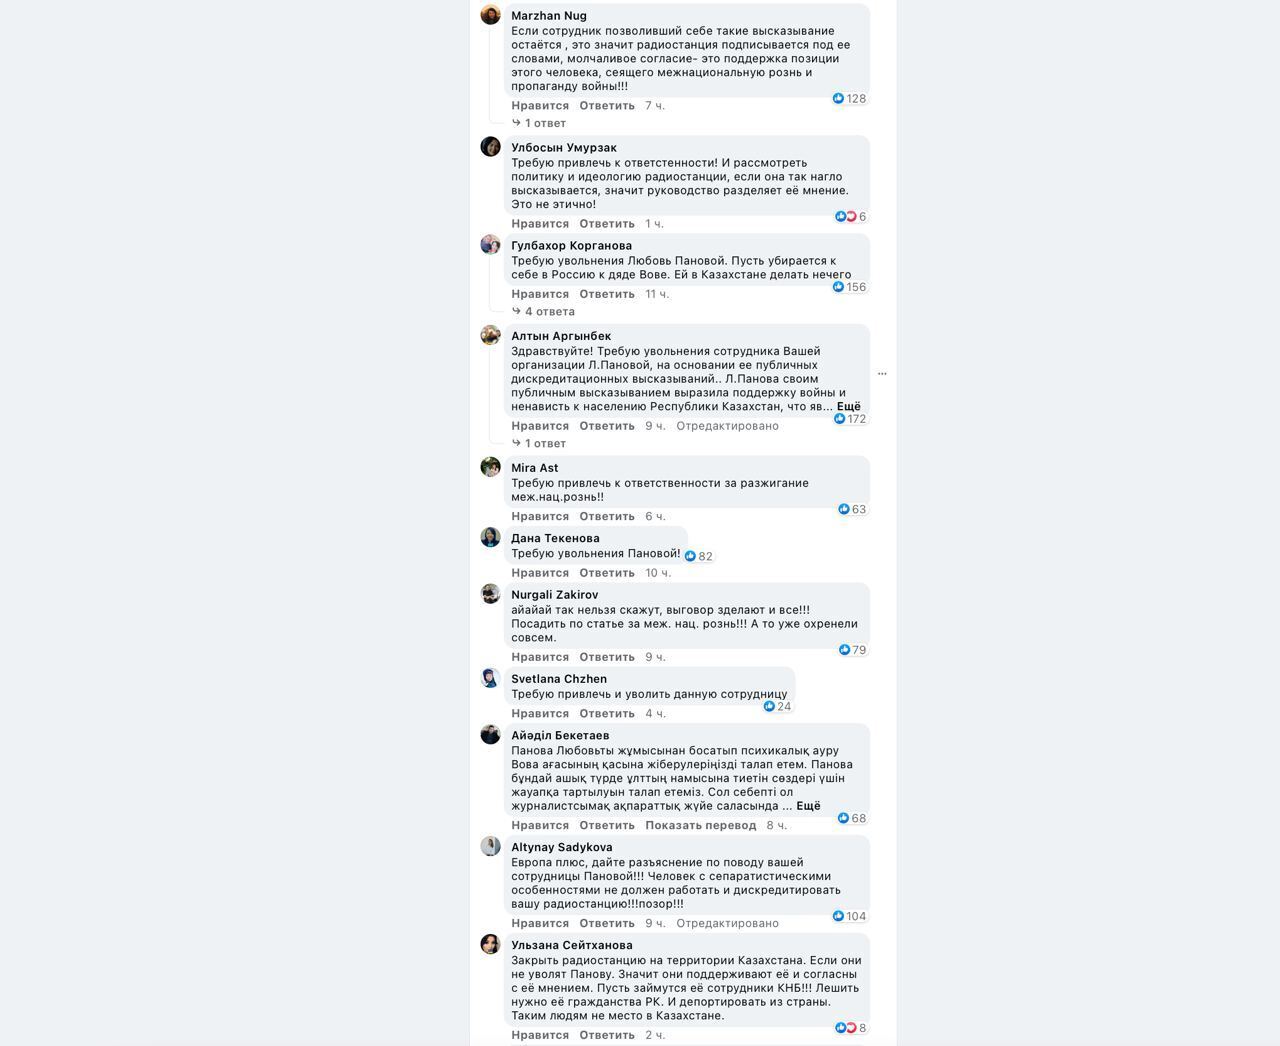 Скриншот коментарів казахстанців.